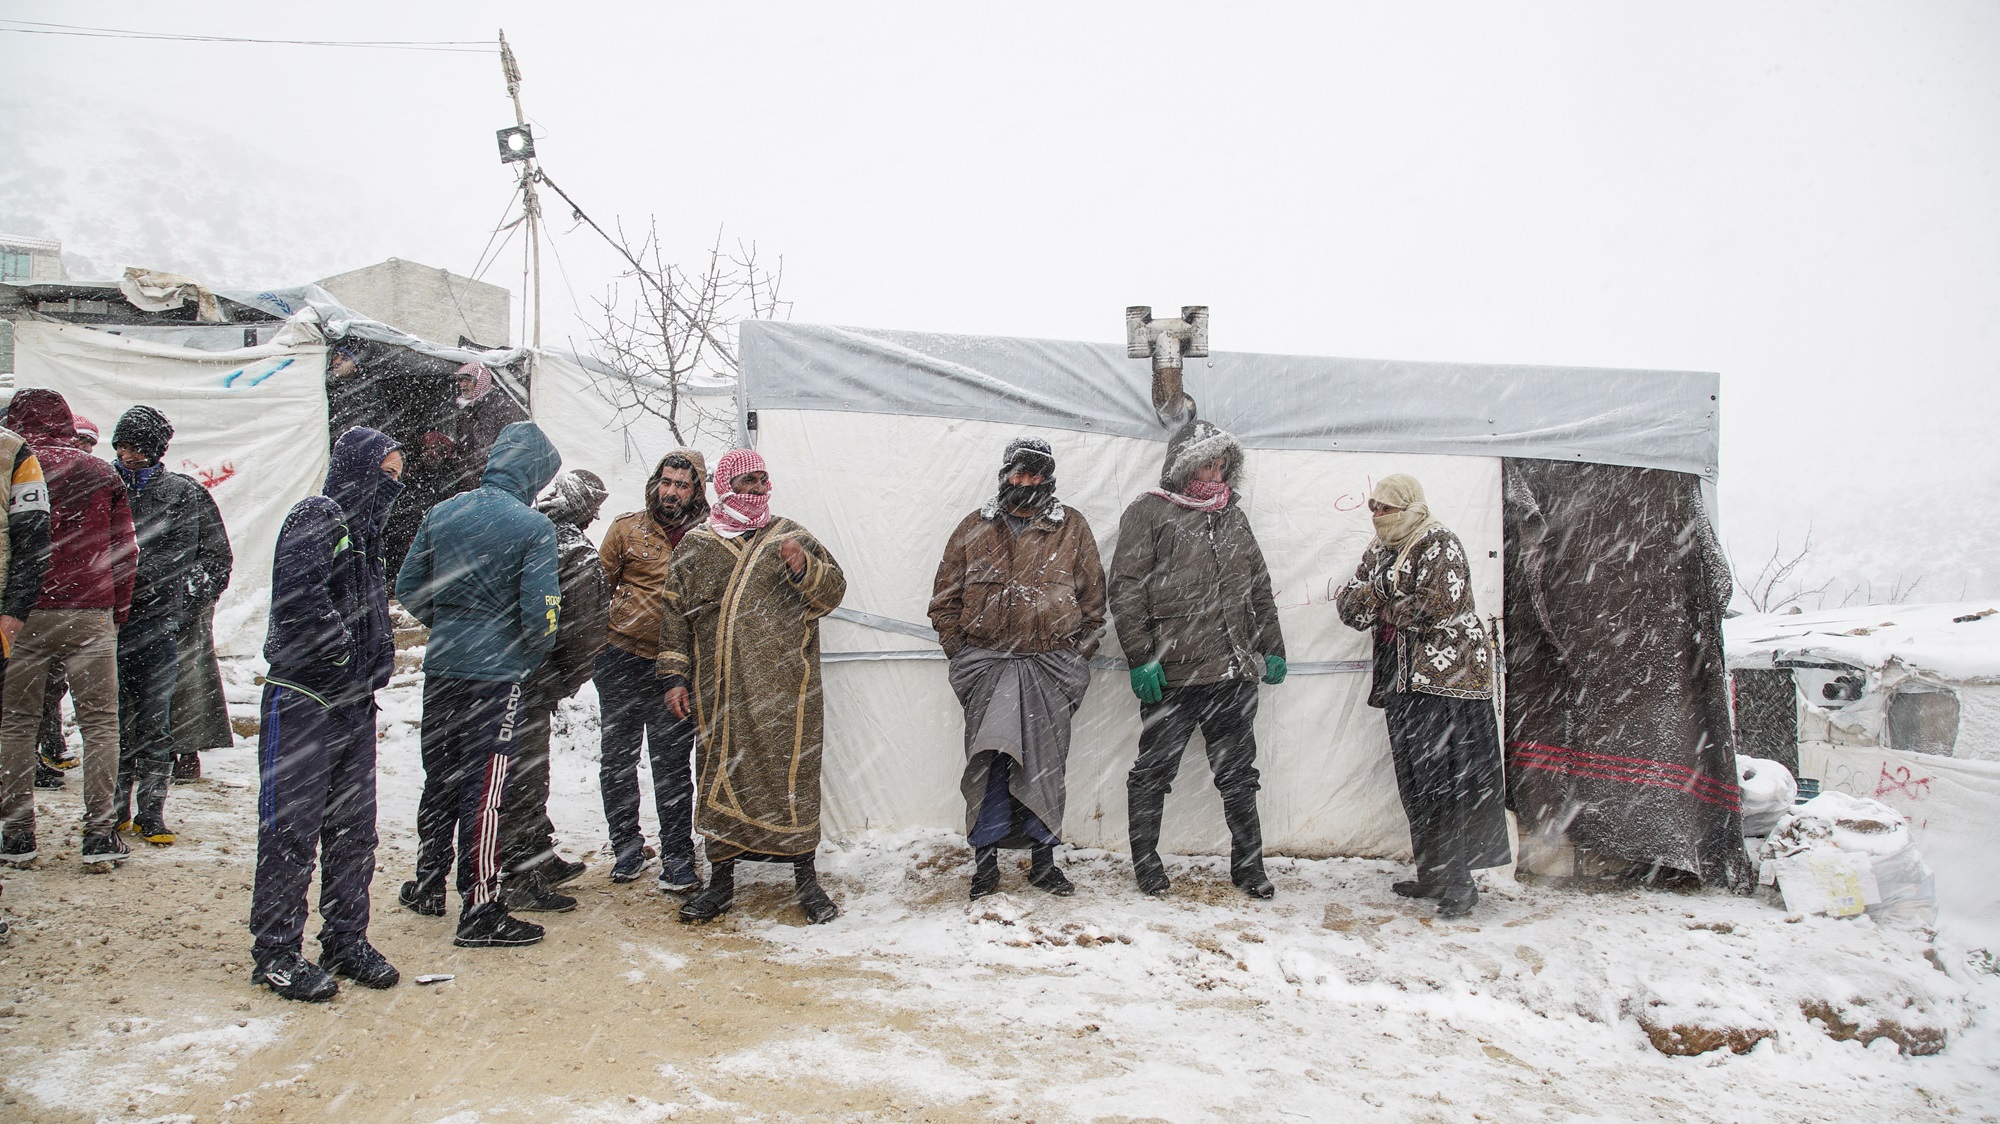 احتياجات الشتاء في مخيمات الشمال السوري: معركة البقاء على قيد الحياة